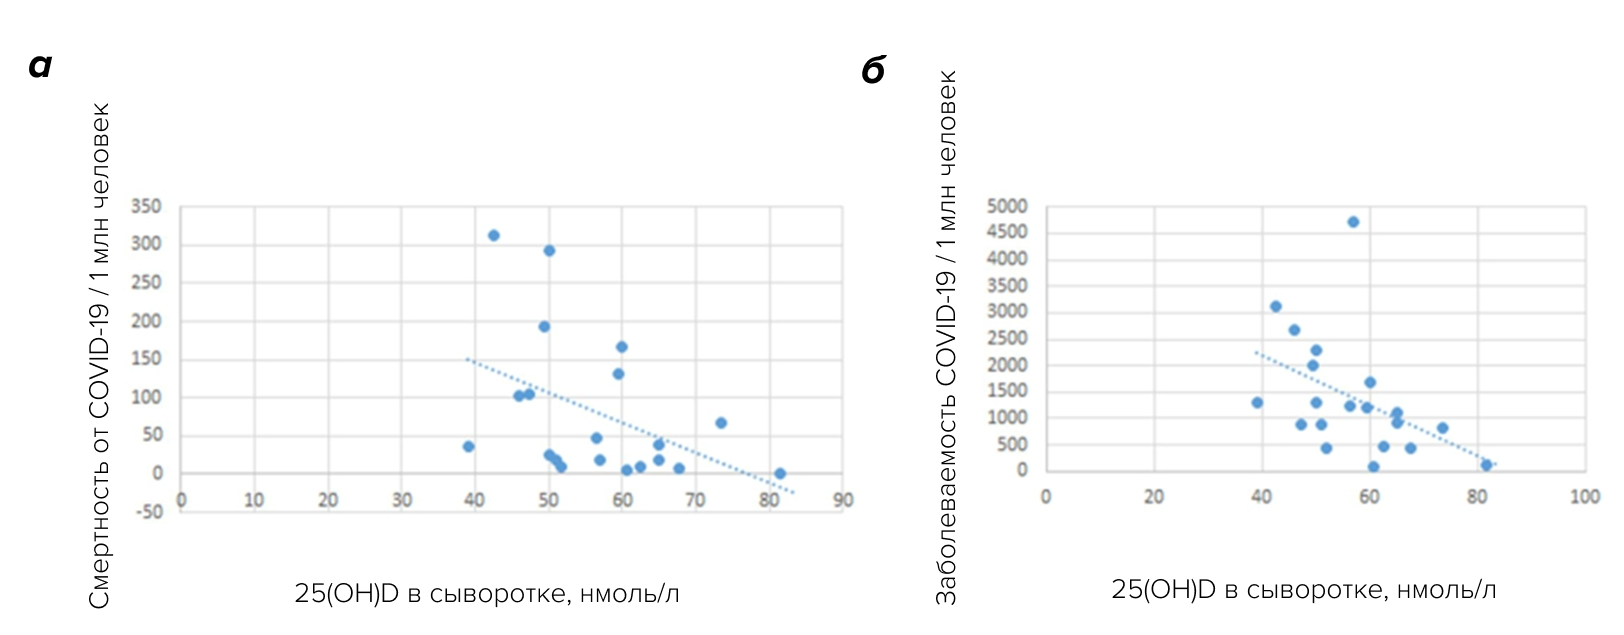 Корреляция между смертностью от COVID-19